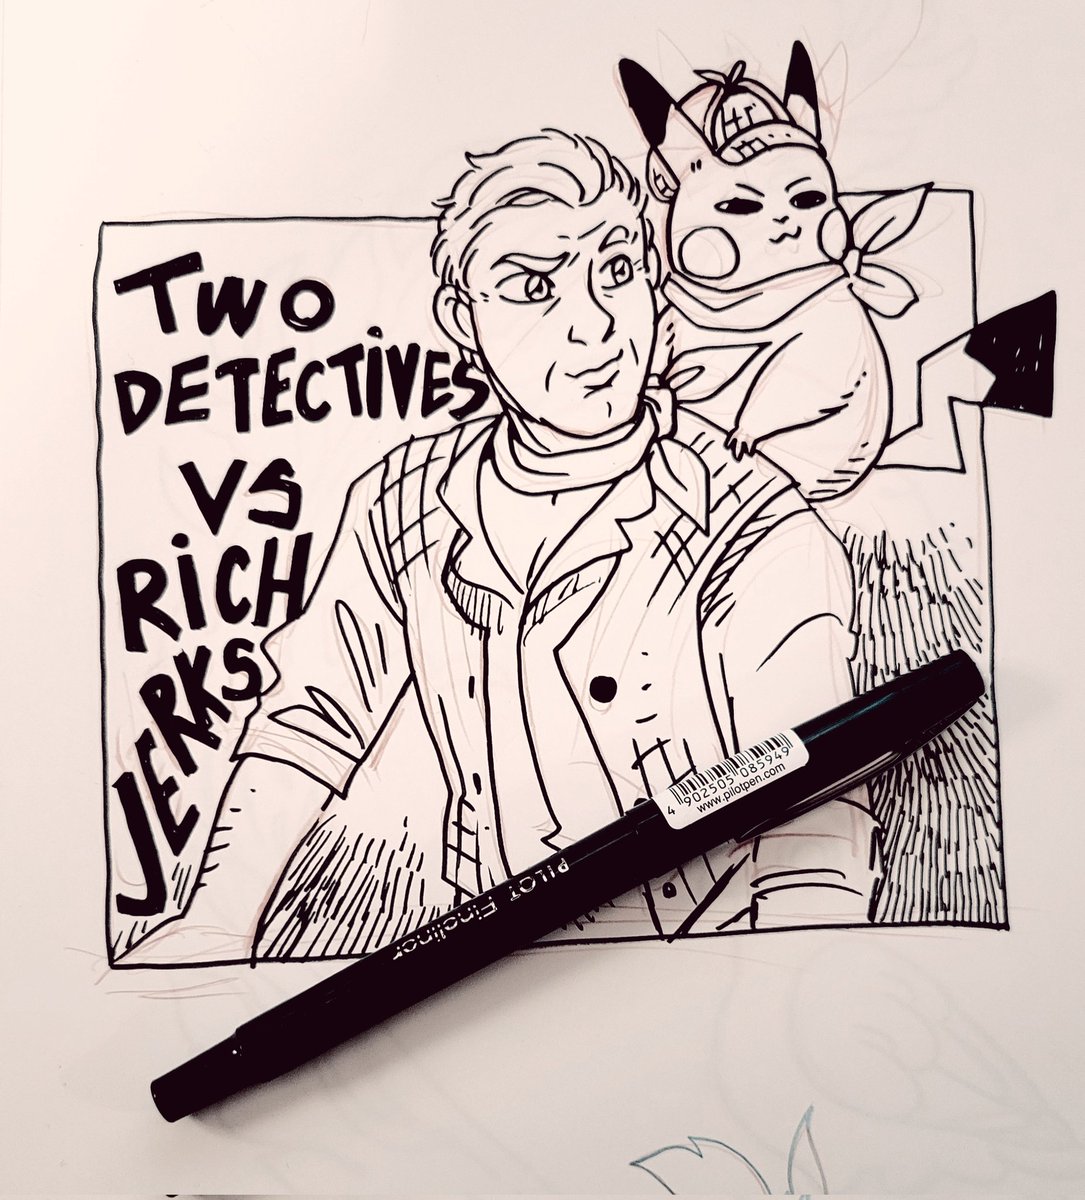 Detective vibes 